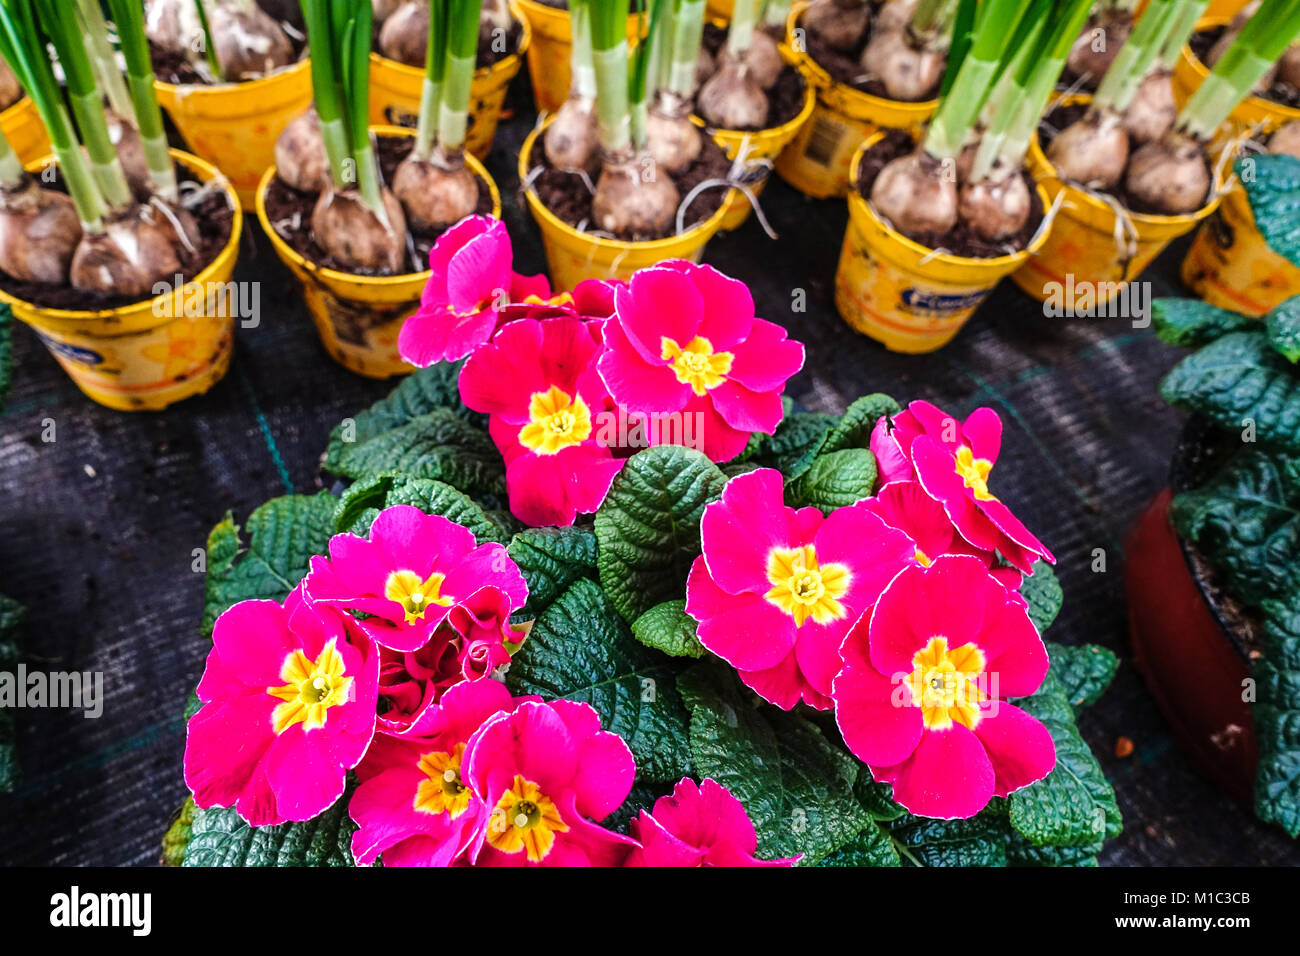 Primula, primrose, polyanthus, primroses and daffodils in pots Stock Photo